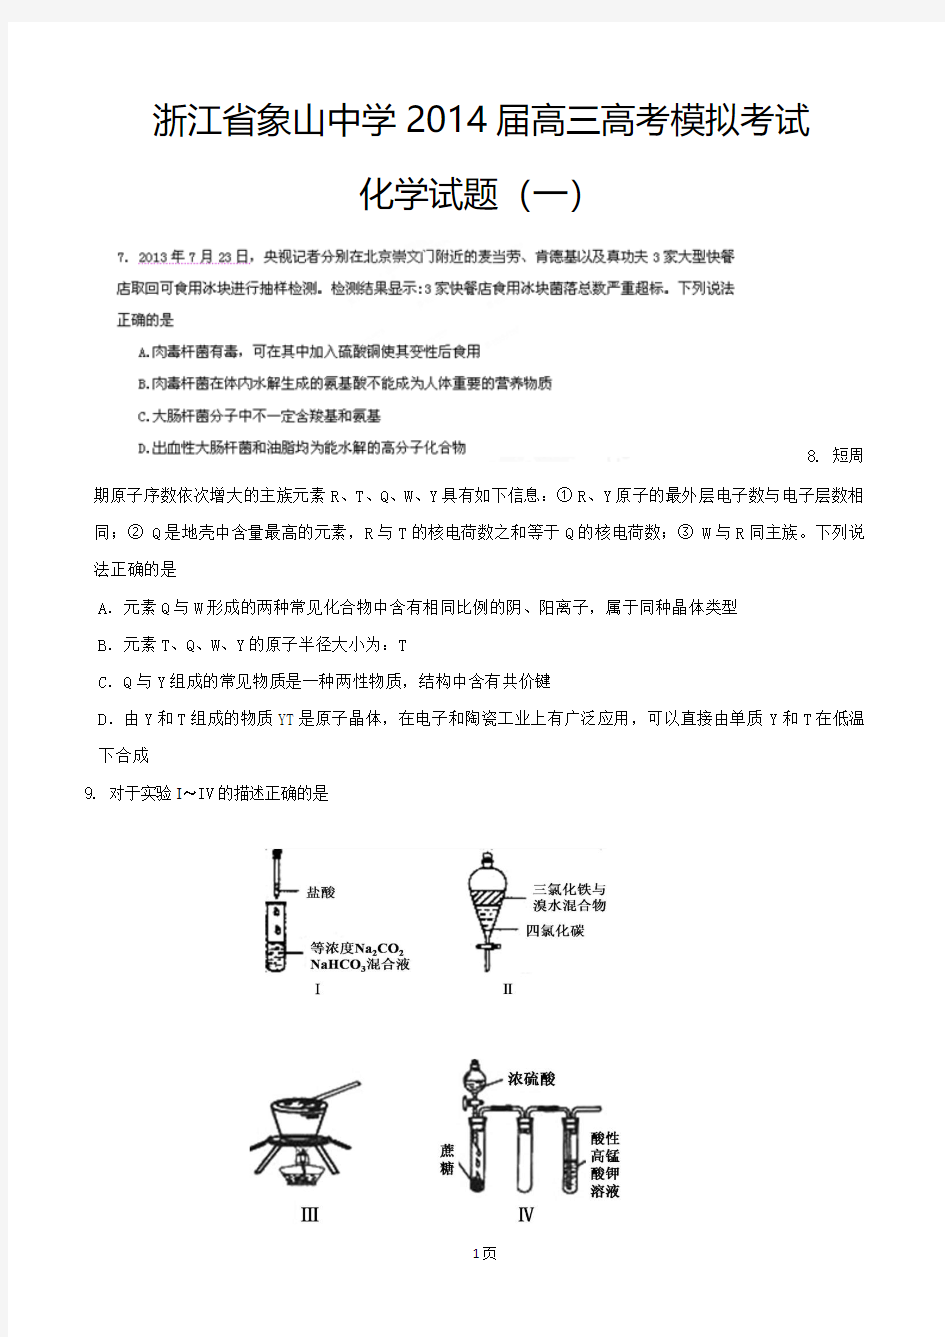 浙江省象山中学2014届高三高考模拟考试(一)化学试题